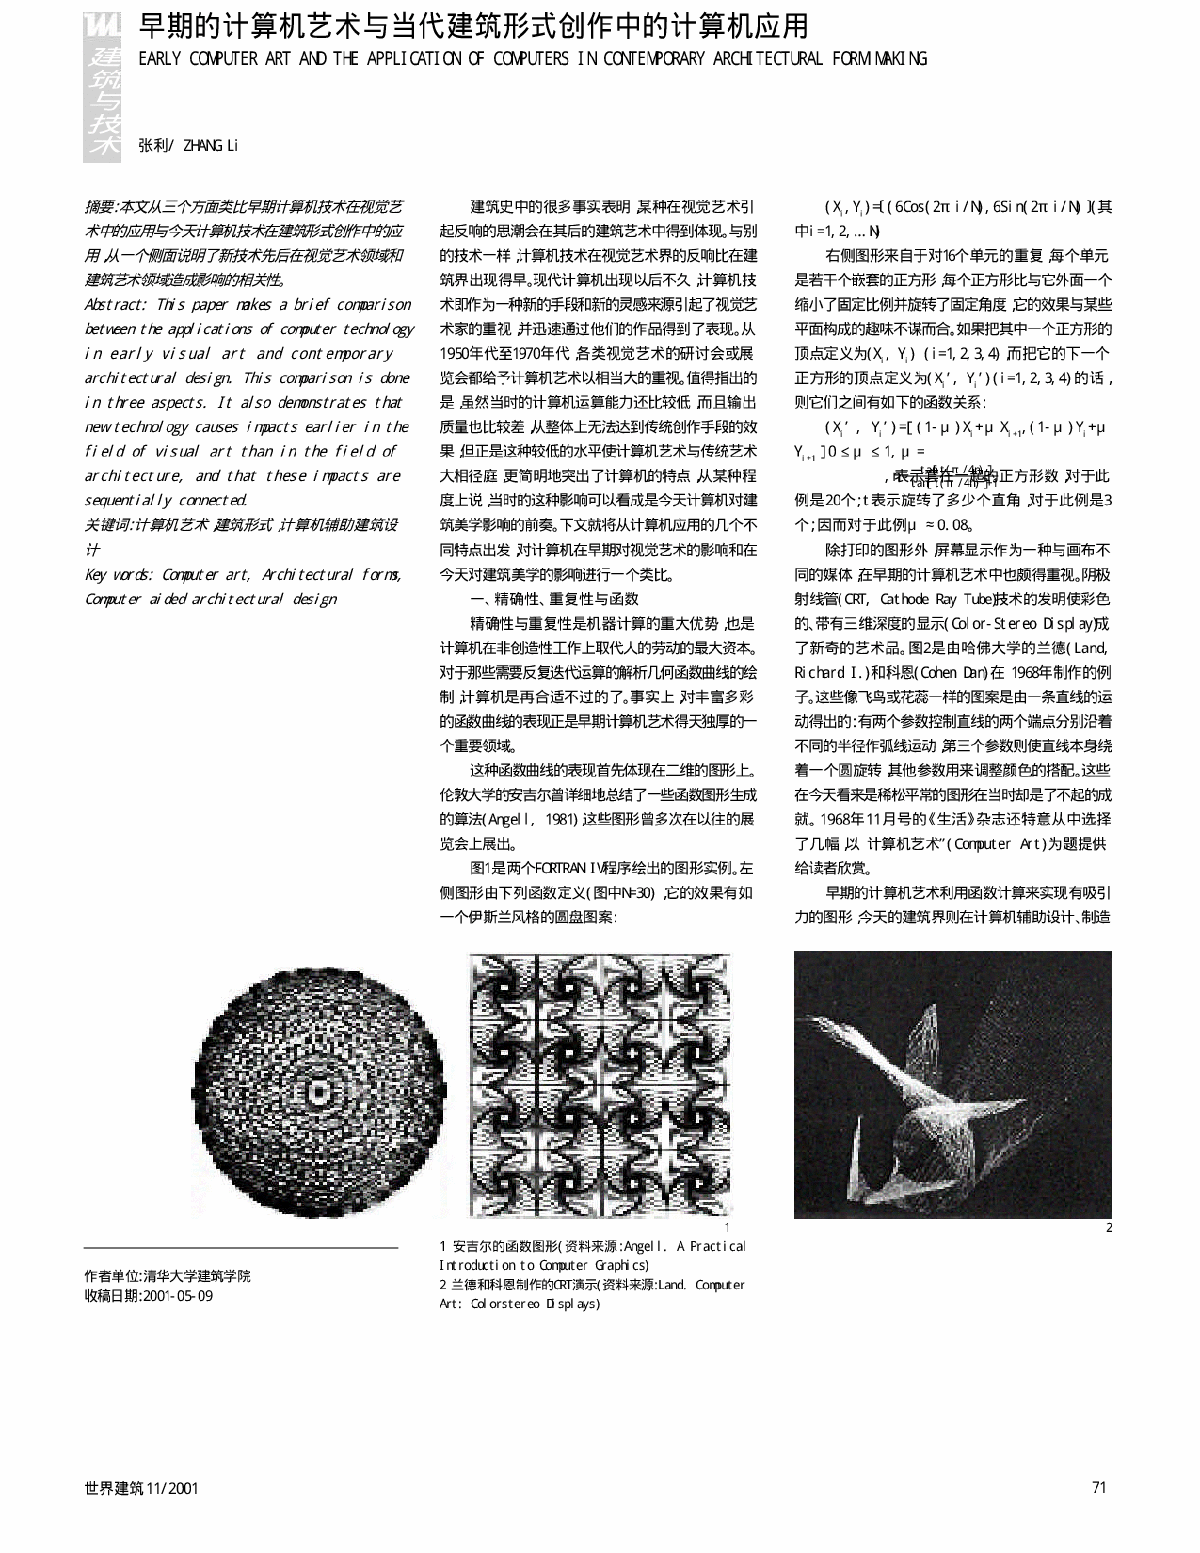 早期的计算机艺术与当代建筑形式创作中的计算机应用